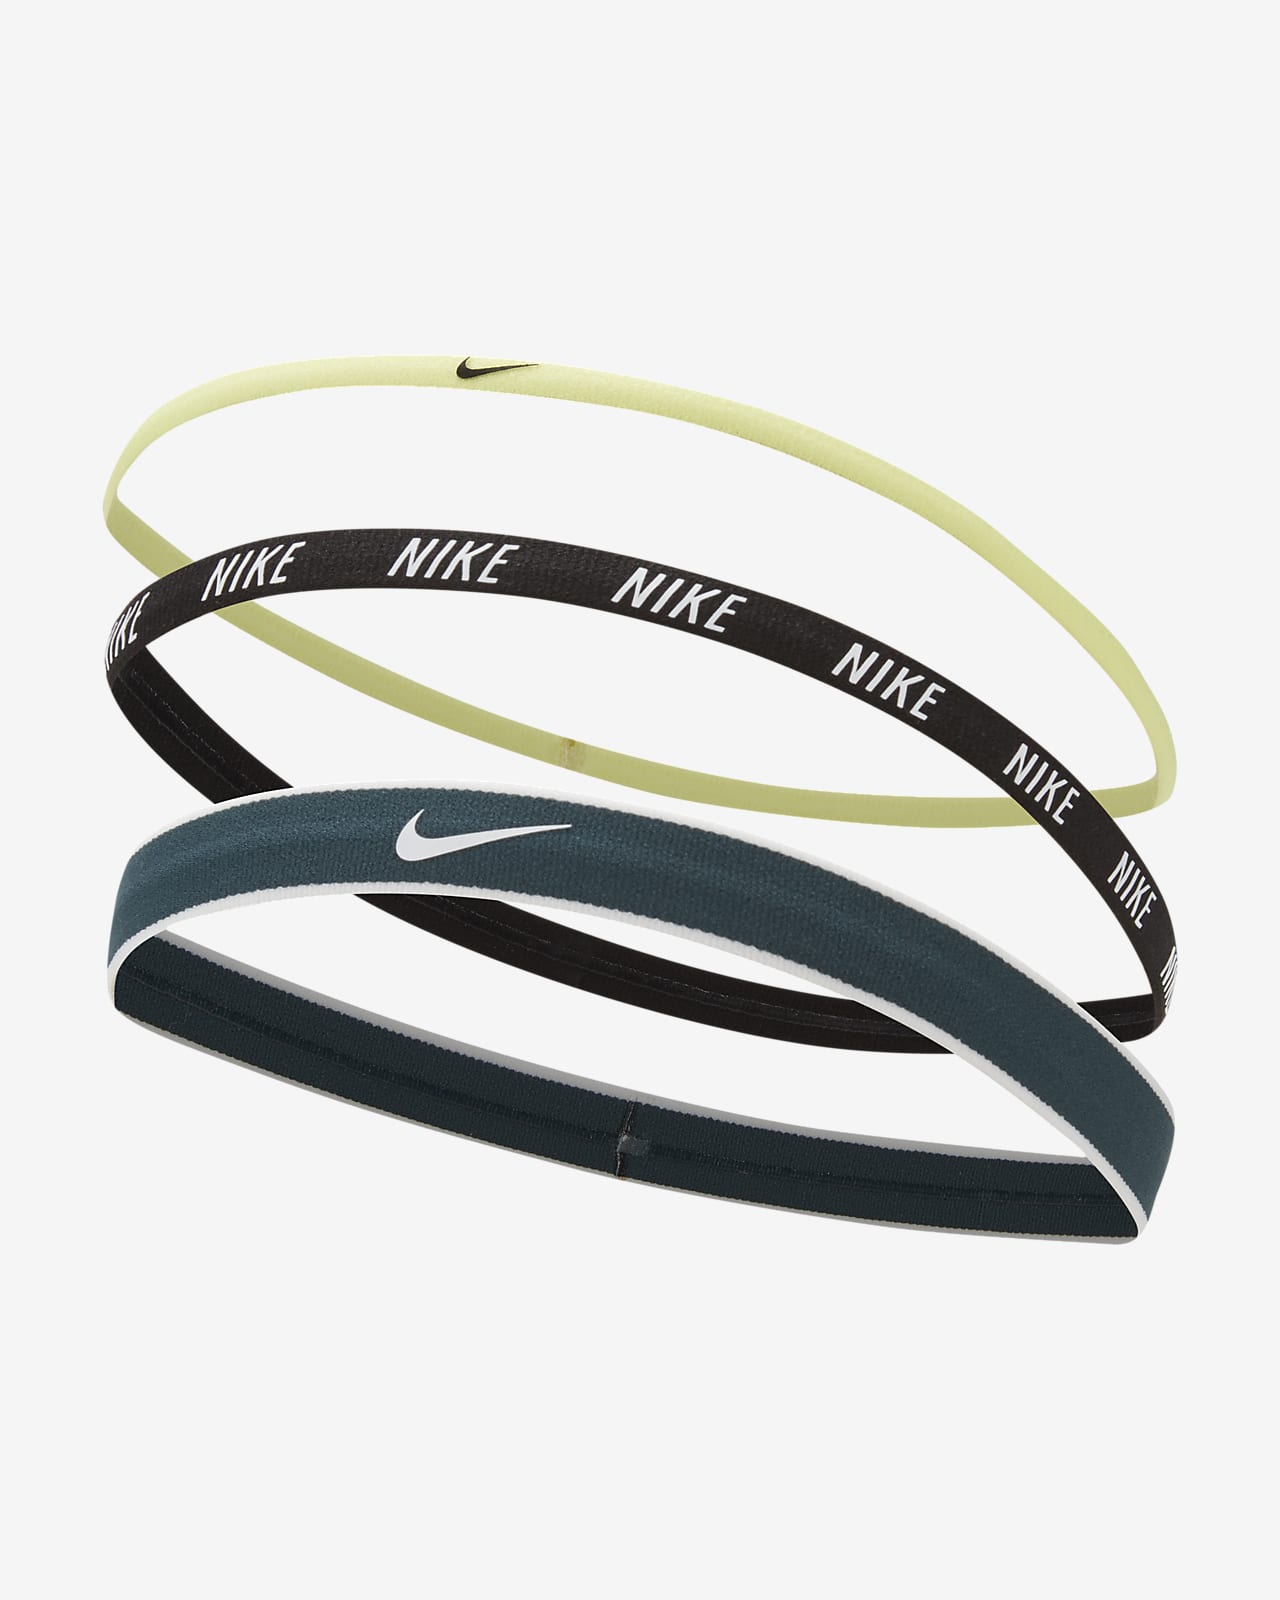 Nike Cintas para el pelo Mixed Width x3